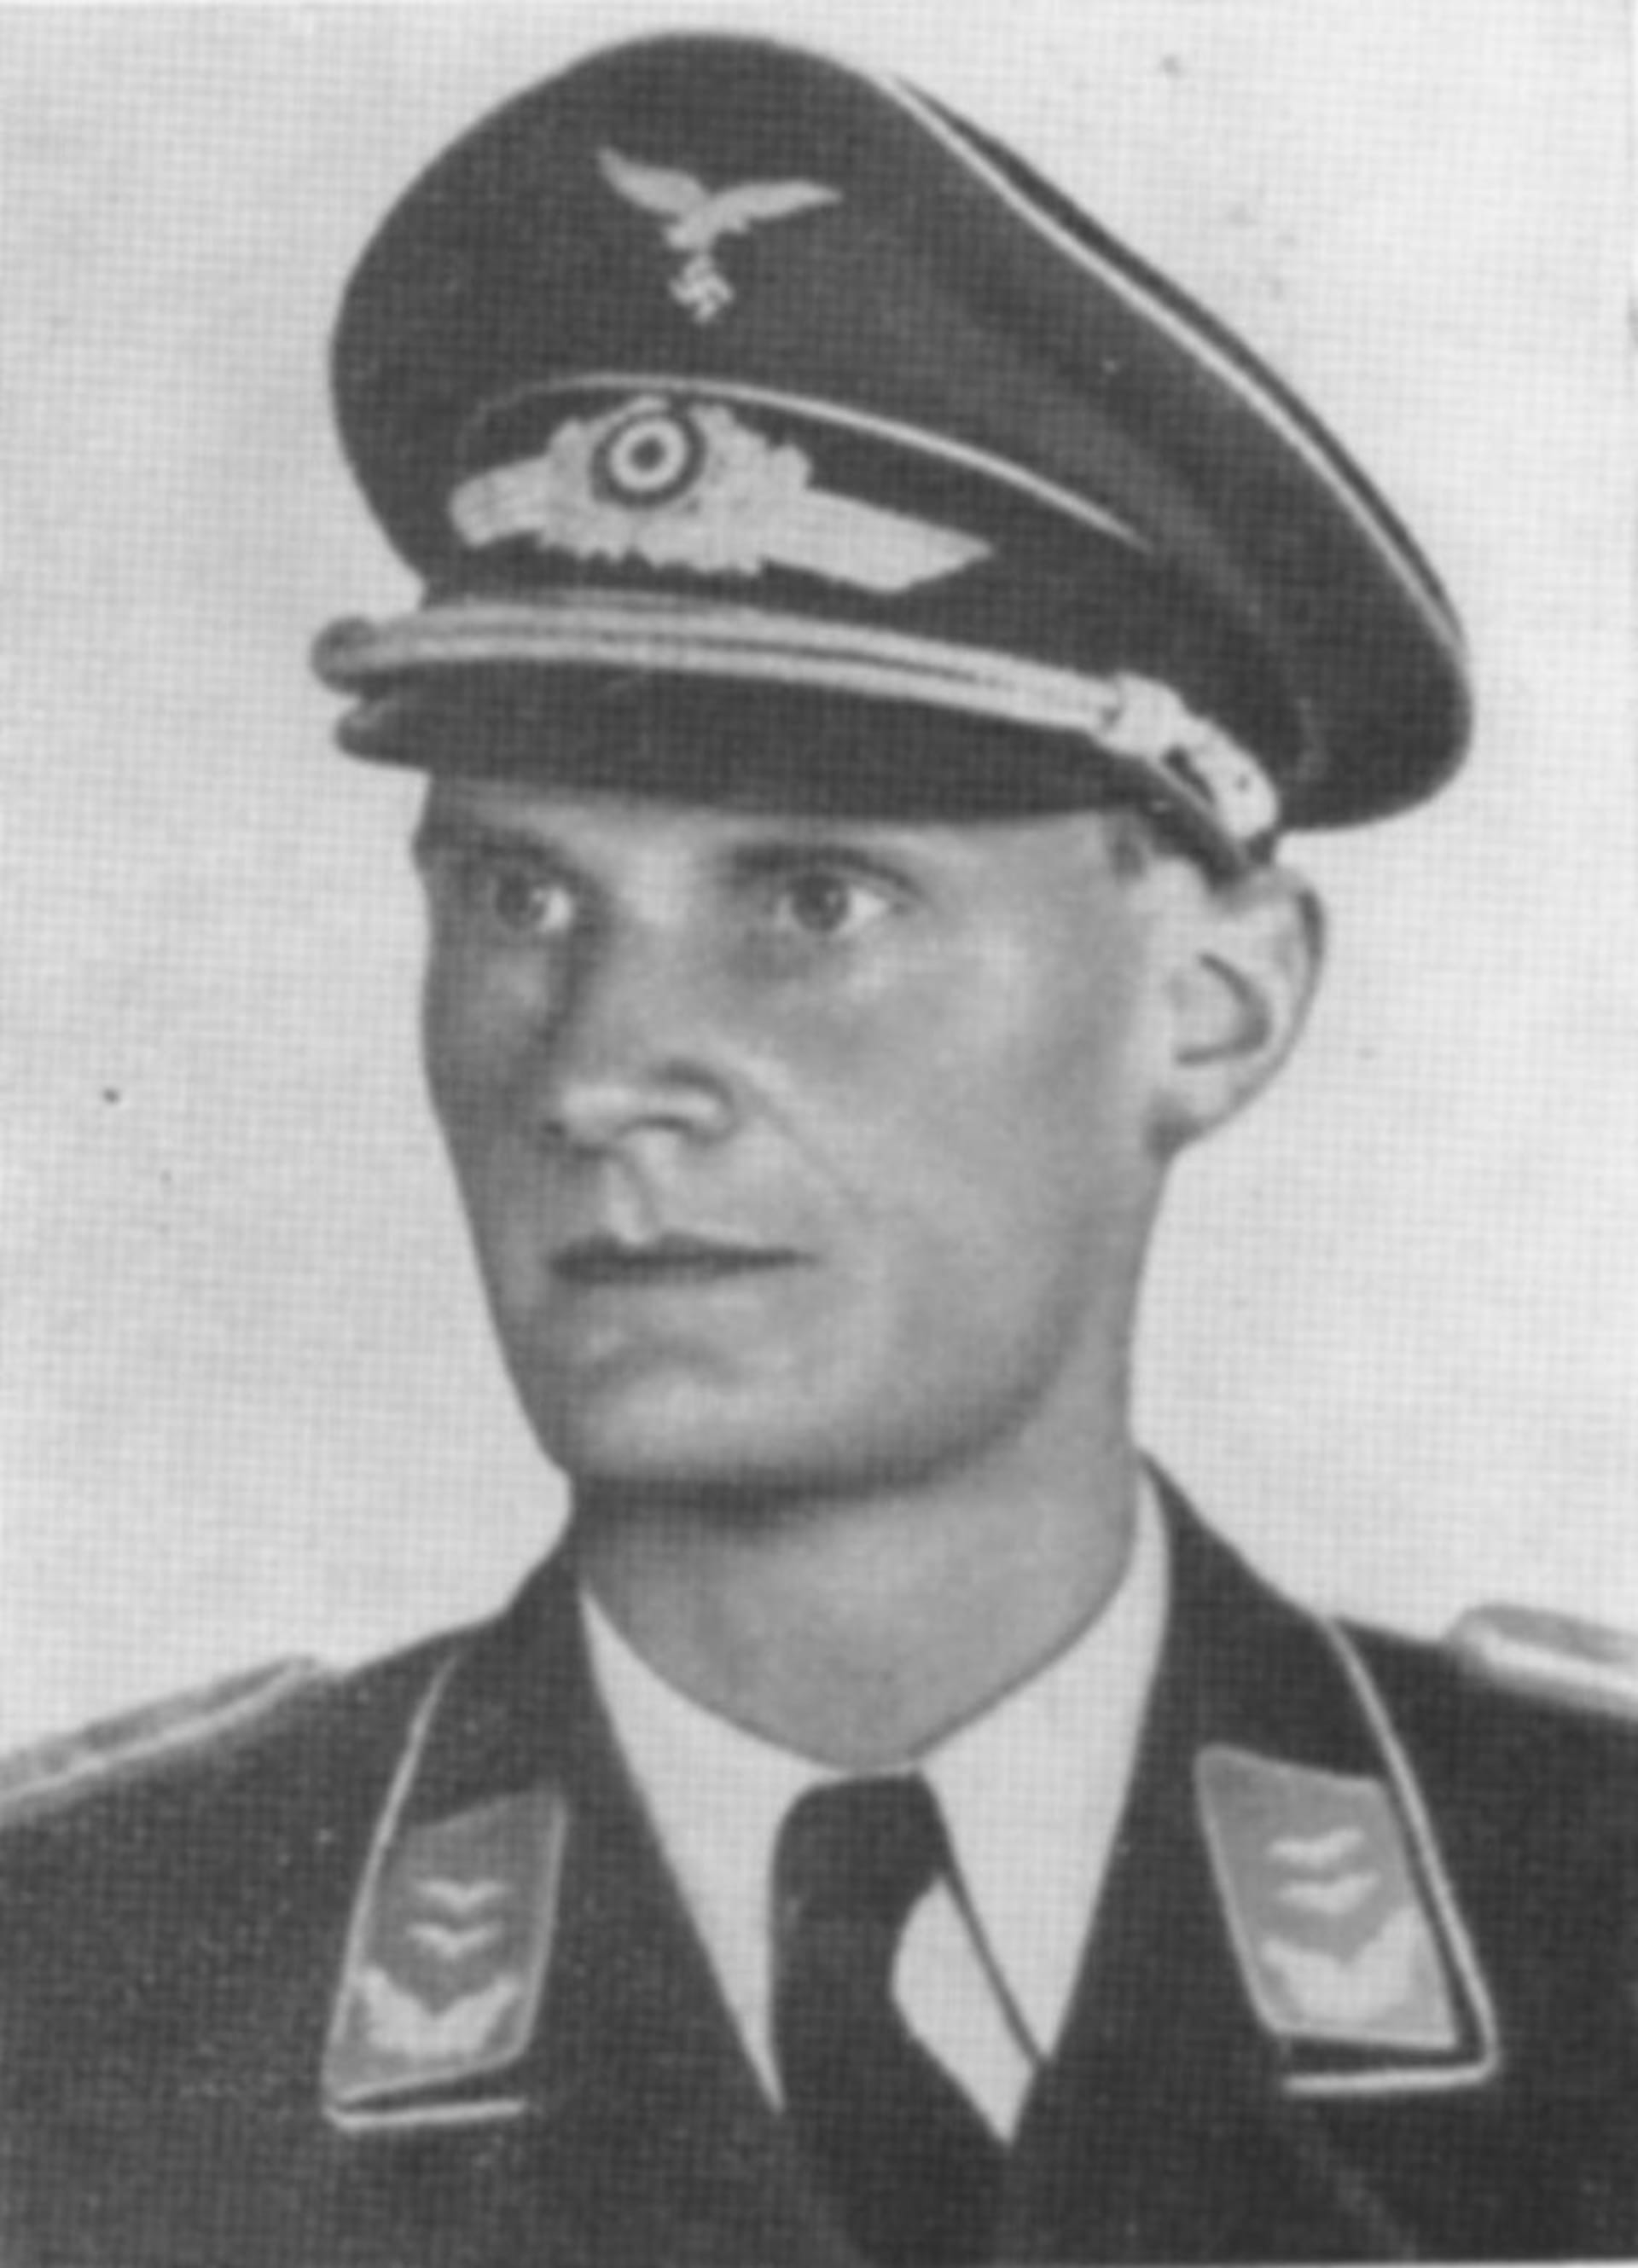 Shultse - Boizen Harro - sovětský špion s hákovám křížem na čepici